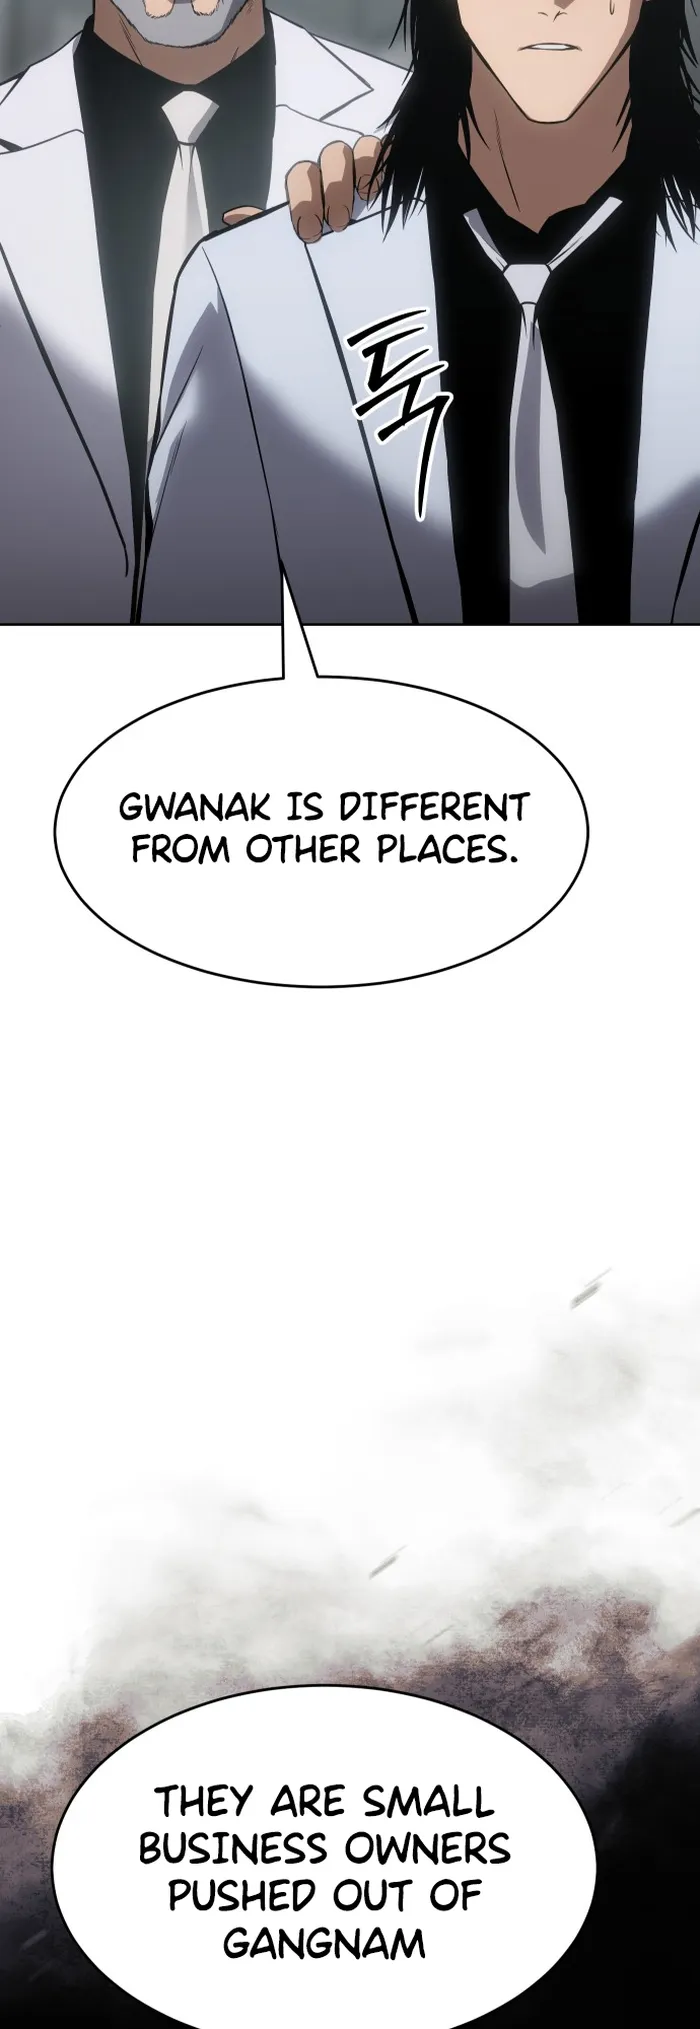 manhuaverse manhwa comic